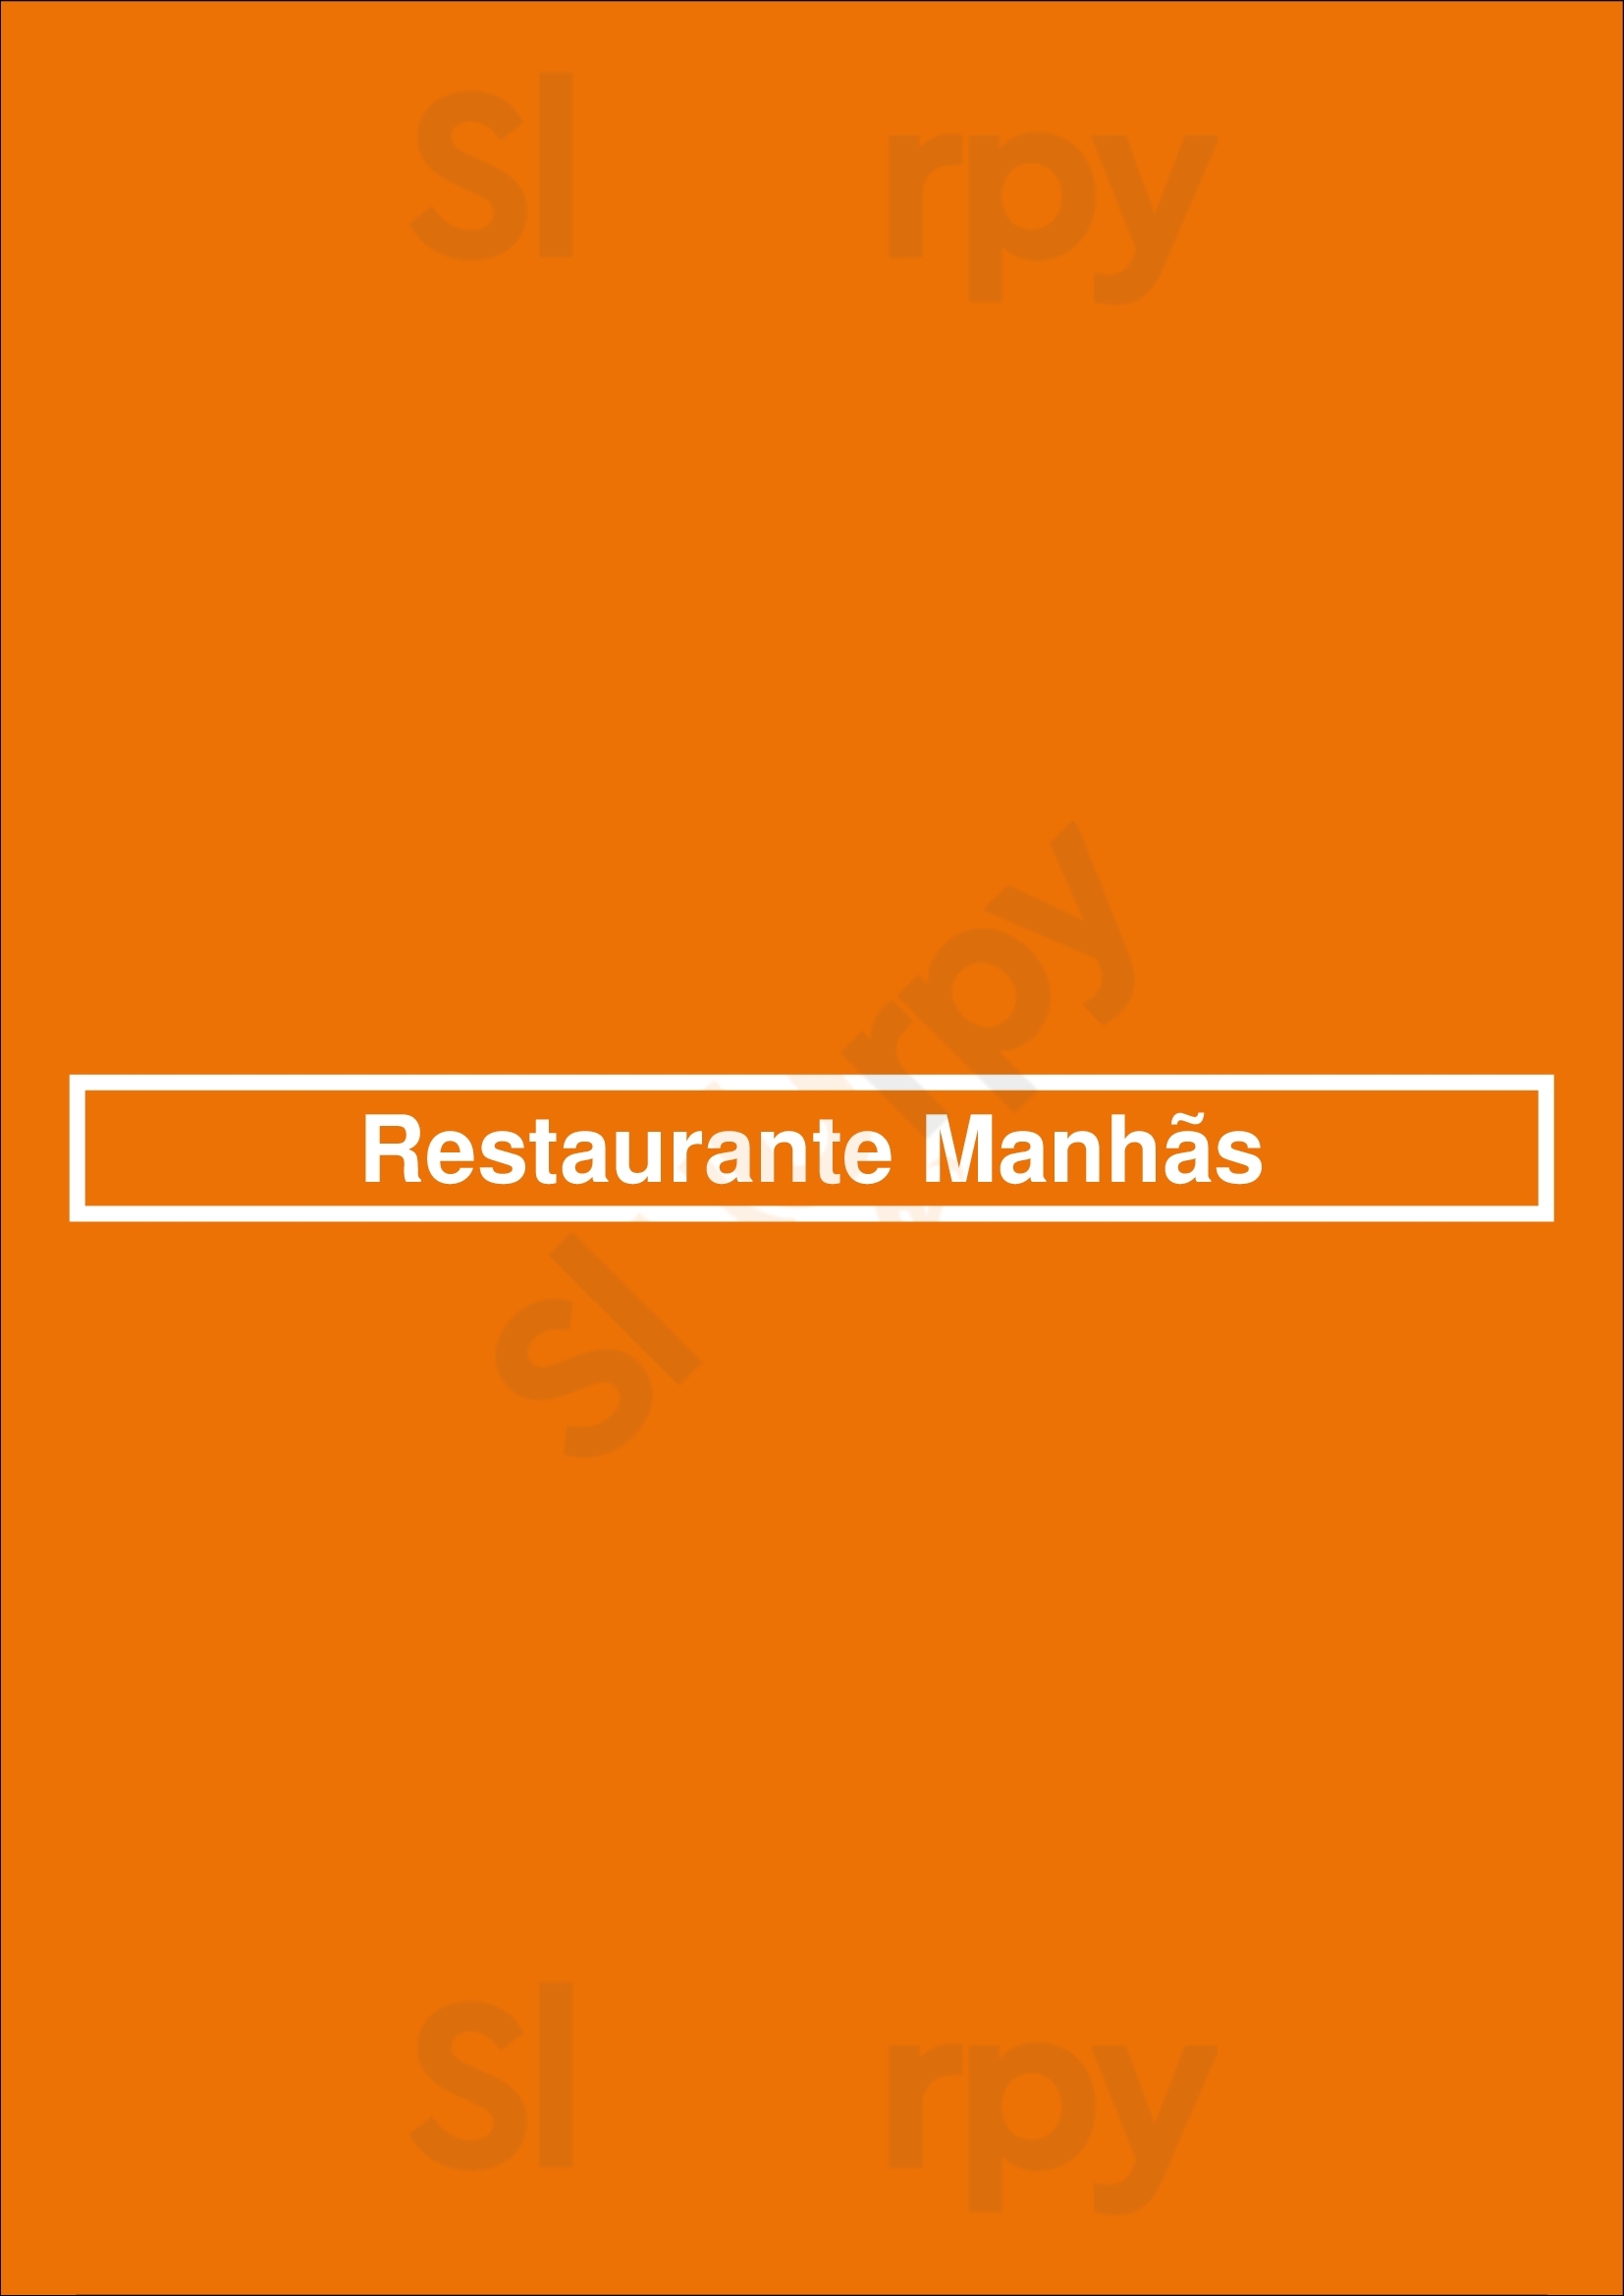 Restaurante Manhãs Fátima Menu - 1